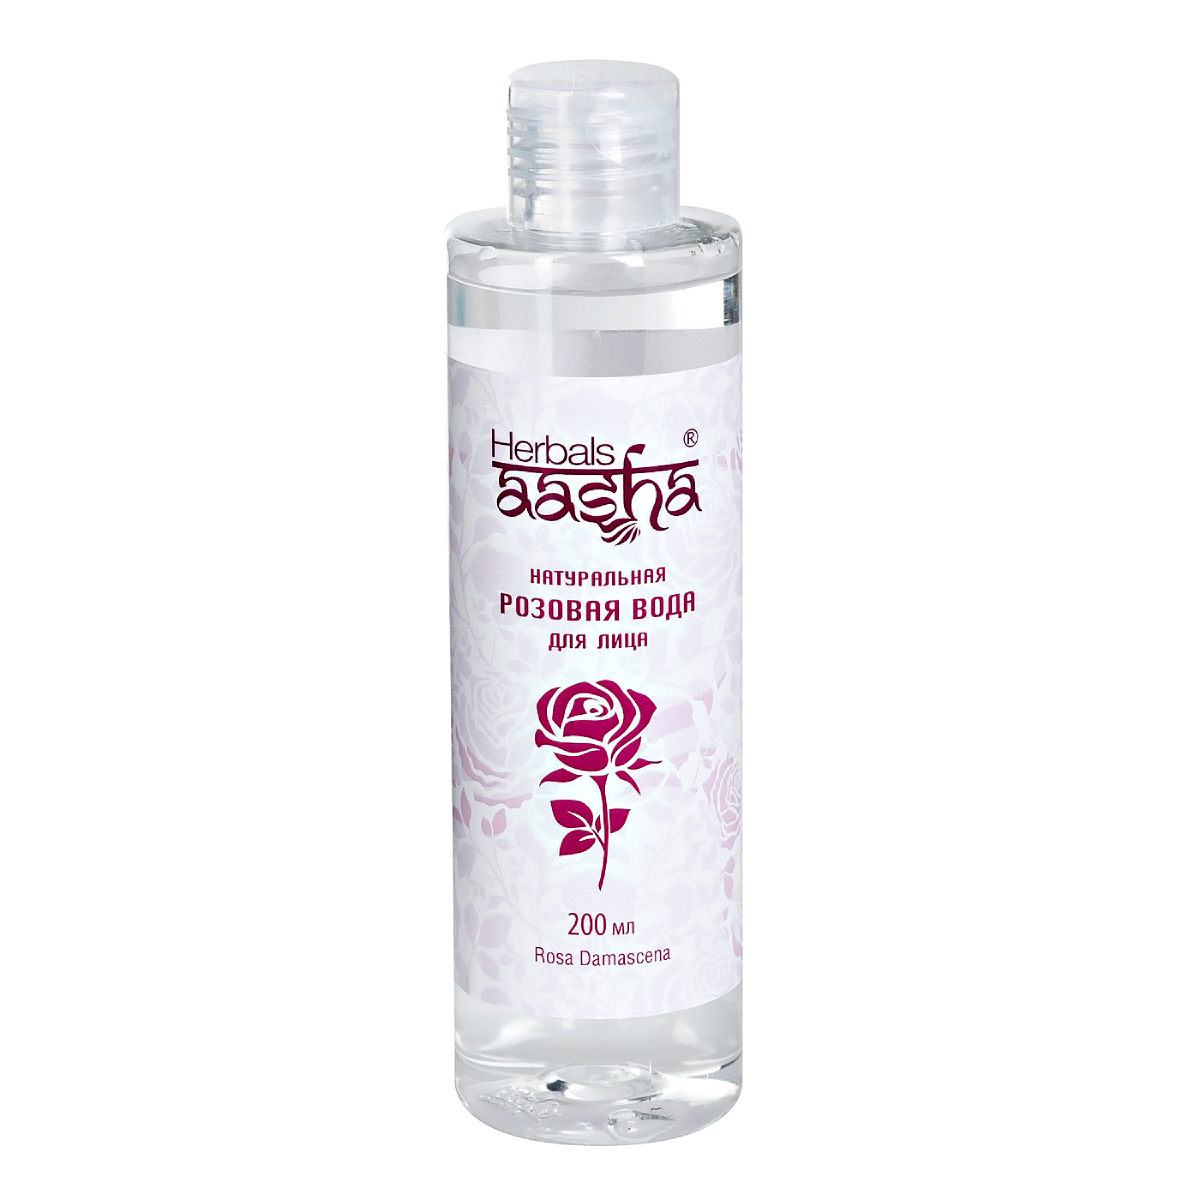 Натуральная розовая вода Aasha Herbals для лица, 200 мл aasha herbals очная вода тулси 100